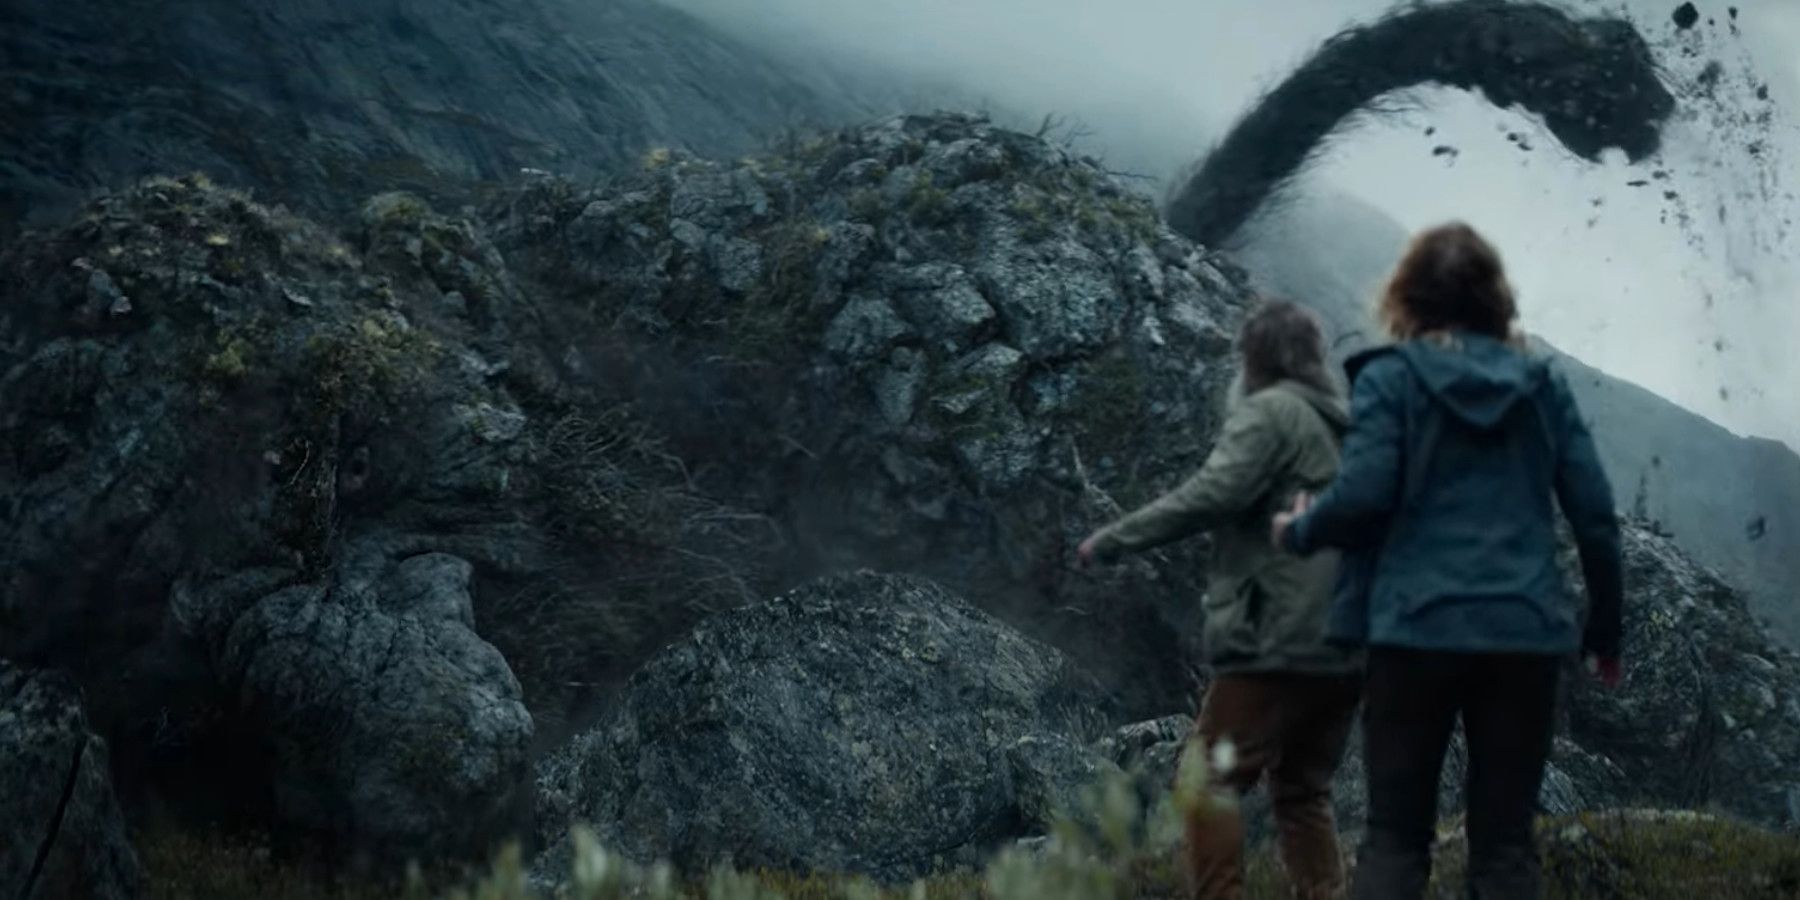 El tráiler de la película Troll de Netflix se burla de la espeluznante historia de un monstruo gigante